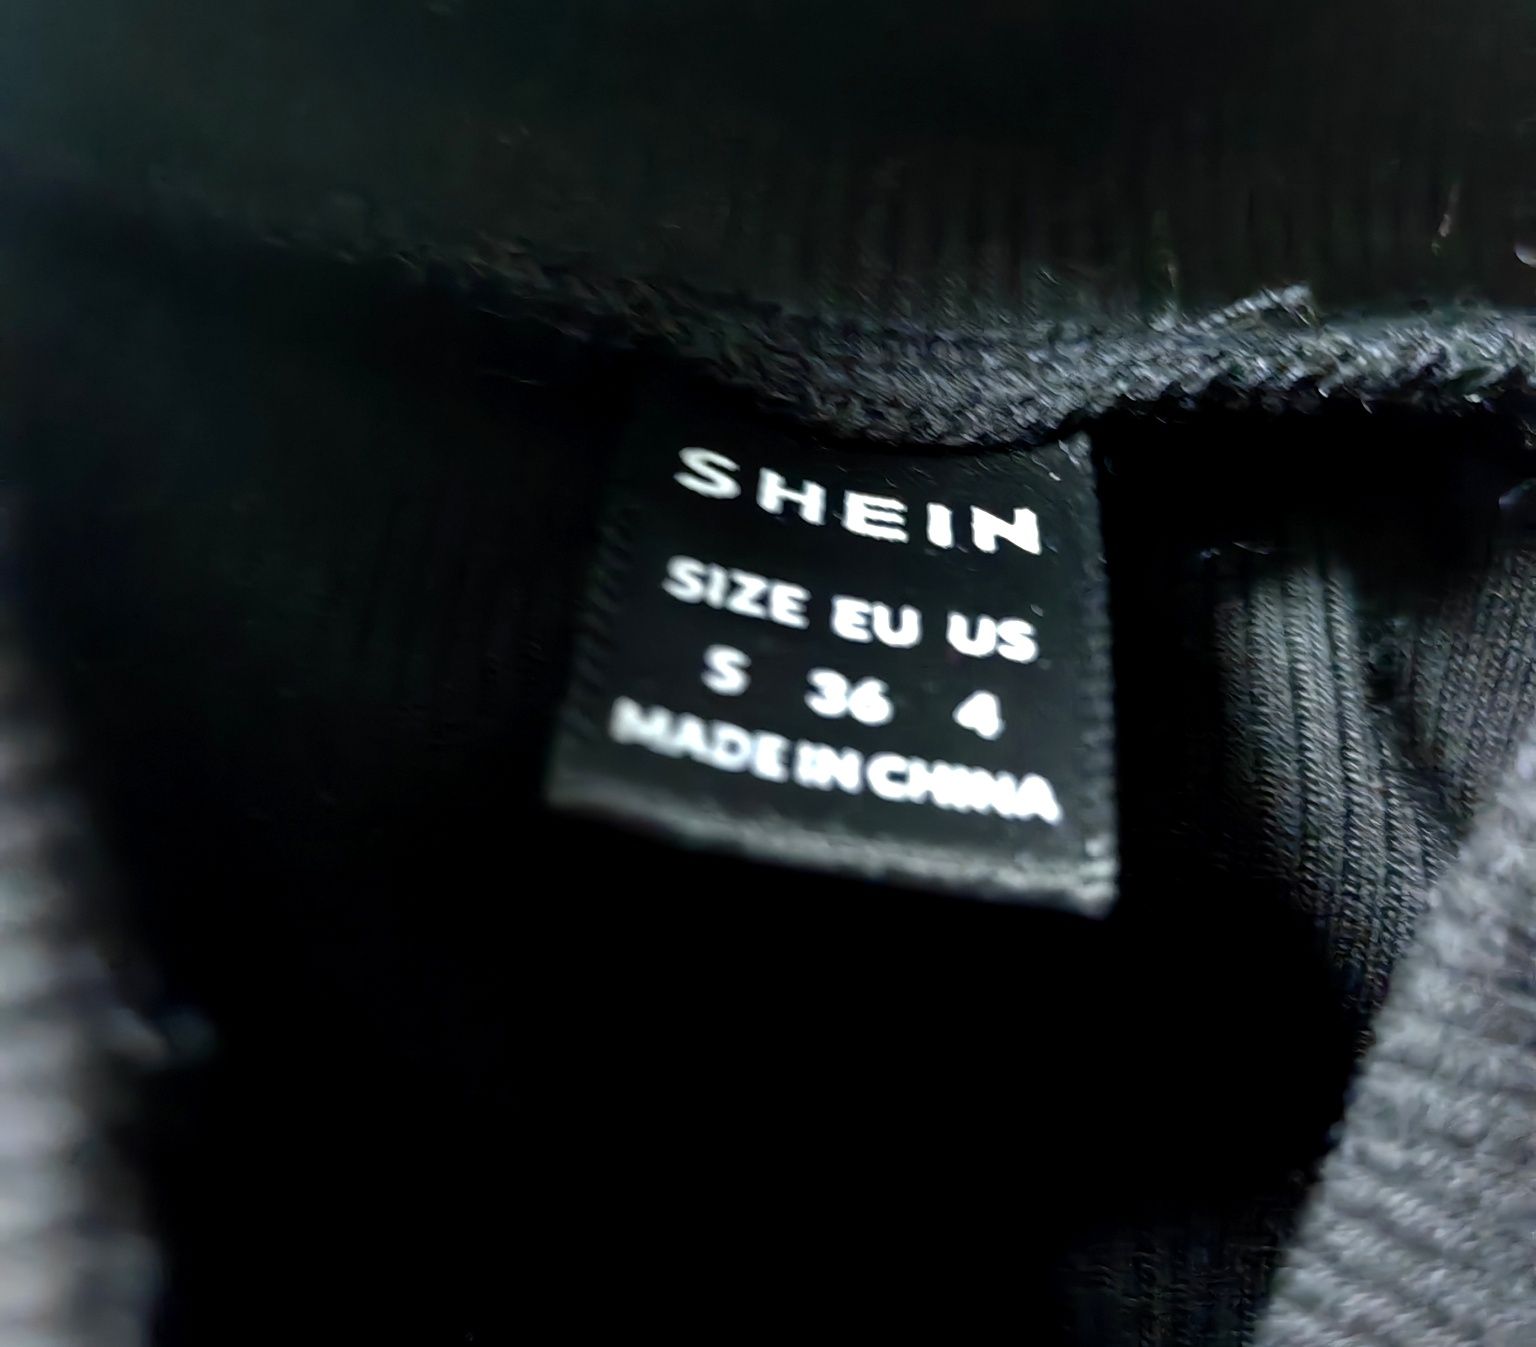 Czarny prążkowany top halter Shein S klasyczny casual półgolf bluzka k